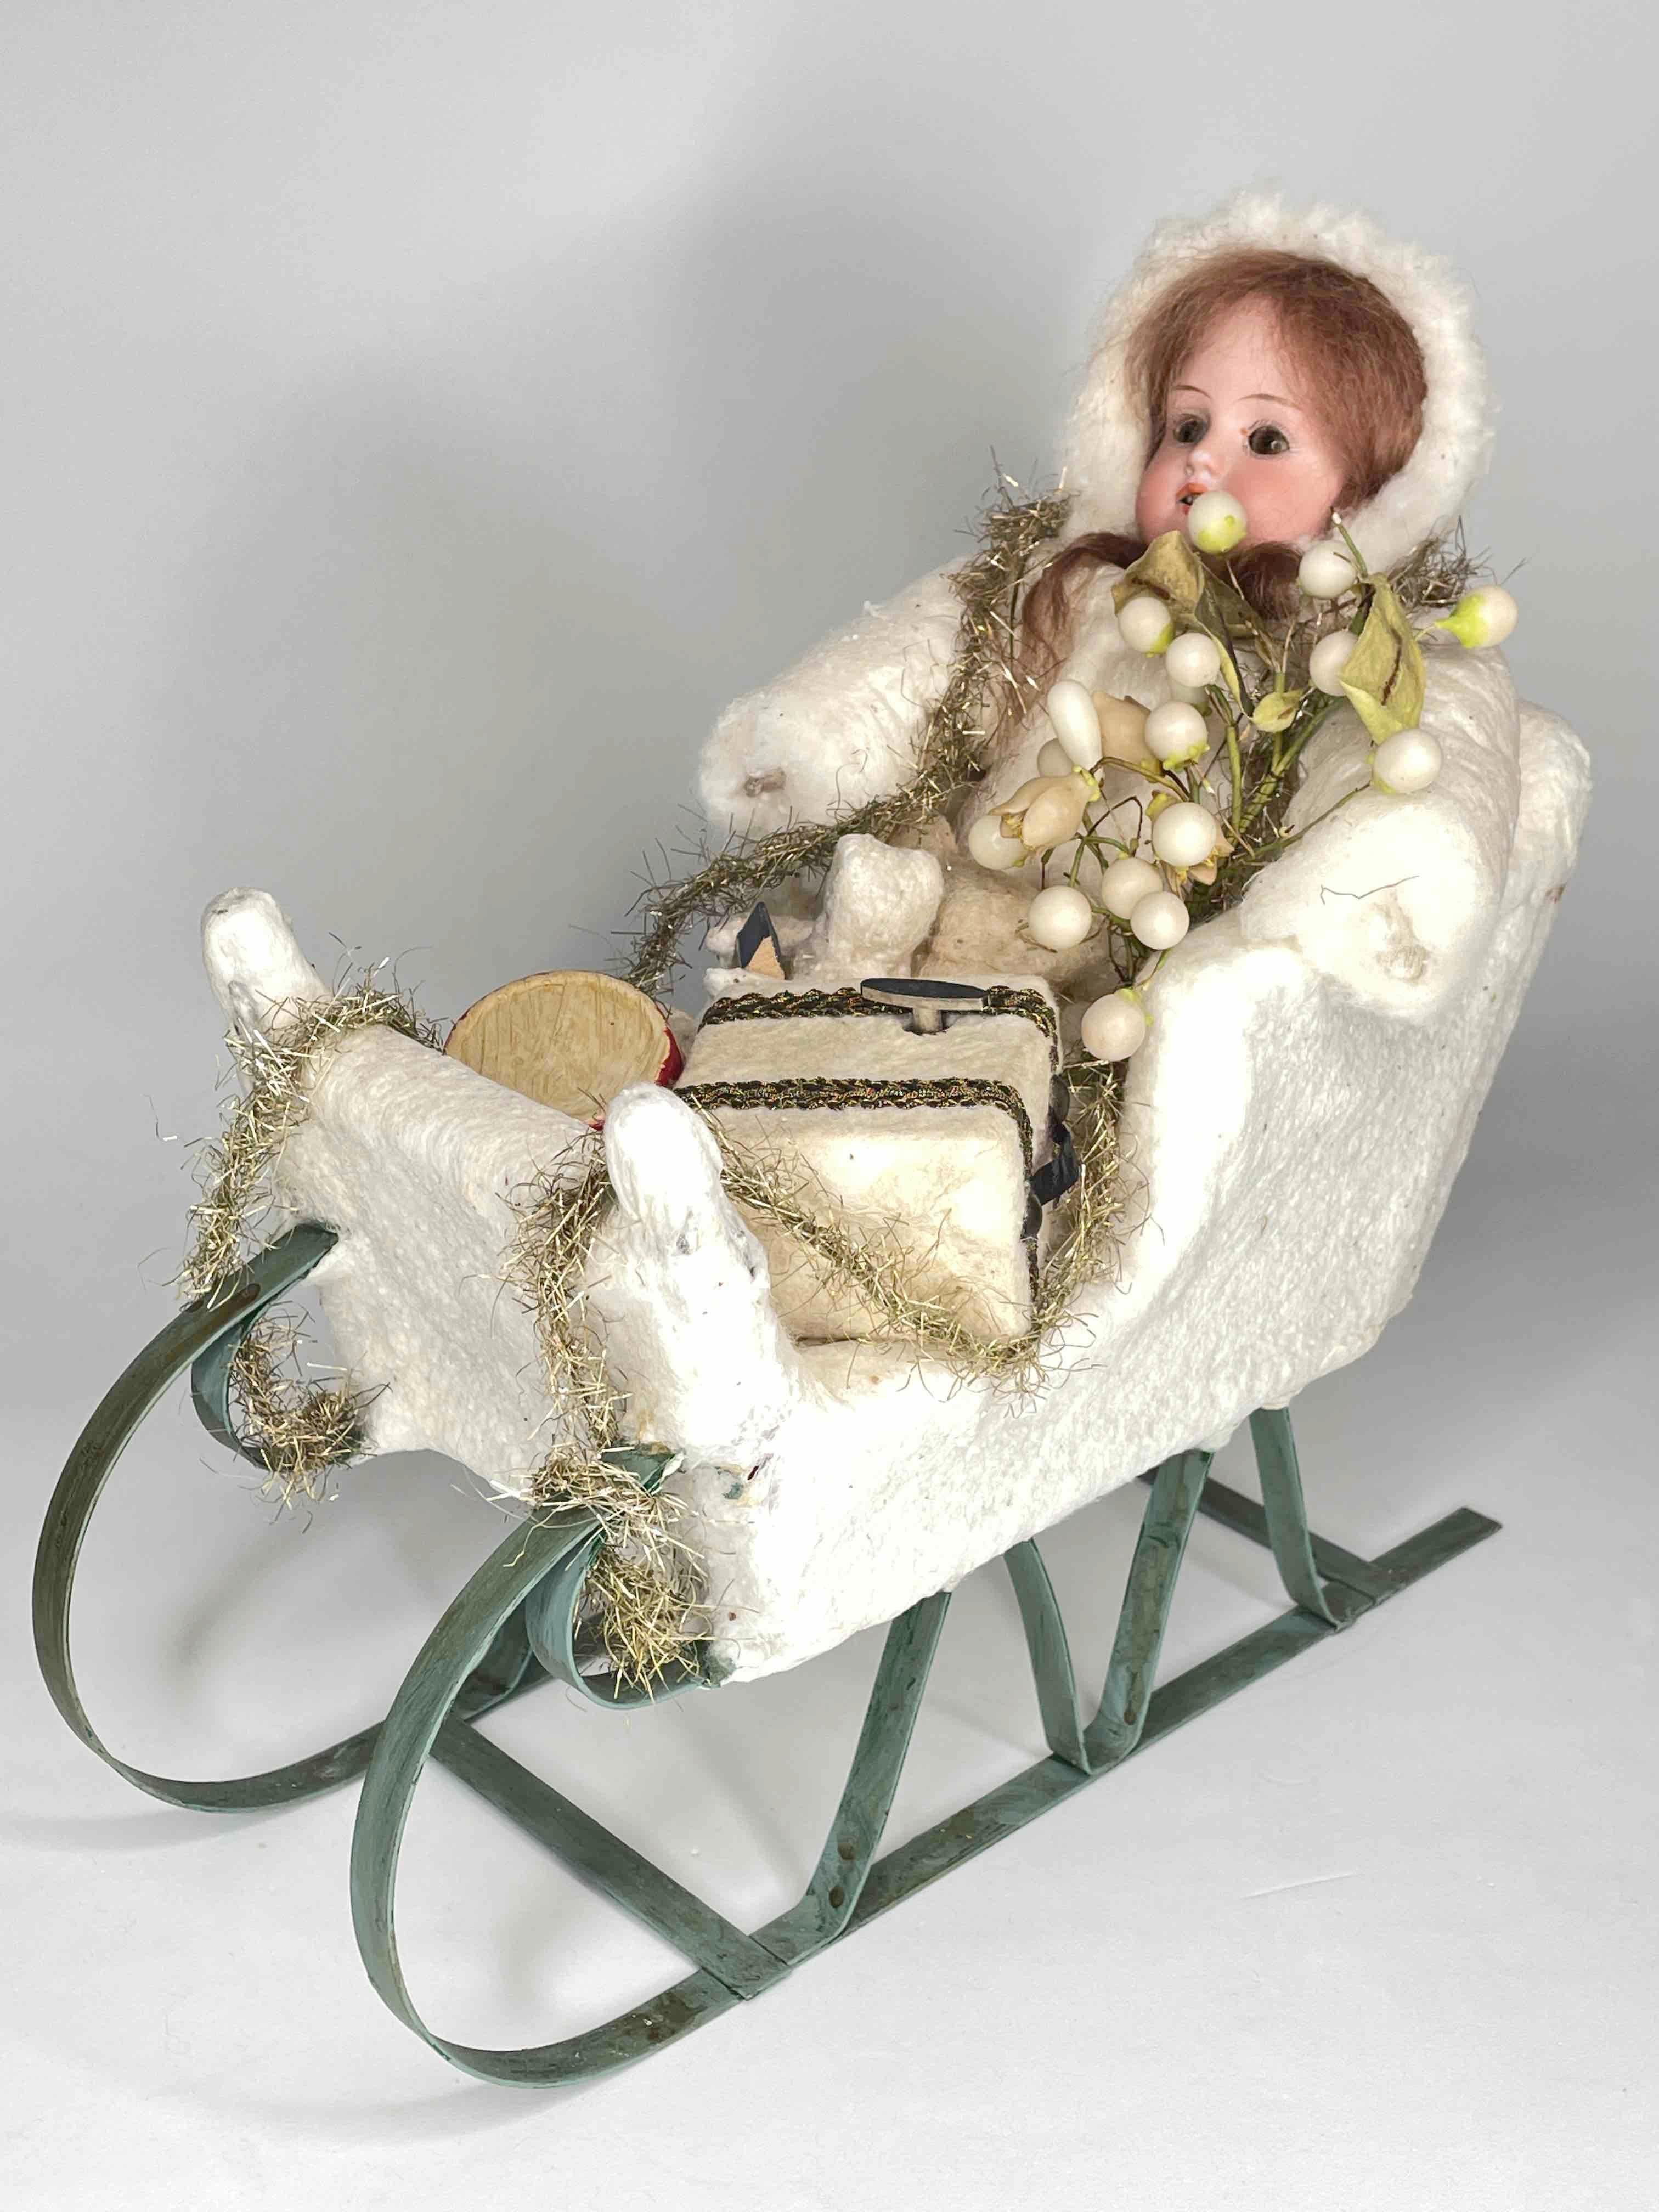 Cette magnifique poupée en biscuit, accompagnée d'un bébé plus petit, est assise dans un traîneau en métal. La poupée a des yeux de verre bruns, des cheveux et des dents blonds. Le manteau est en coton pressé. Le traîneau était bordé de coton pressé